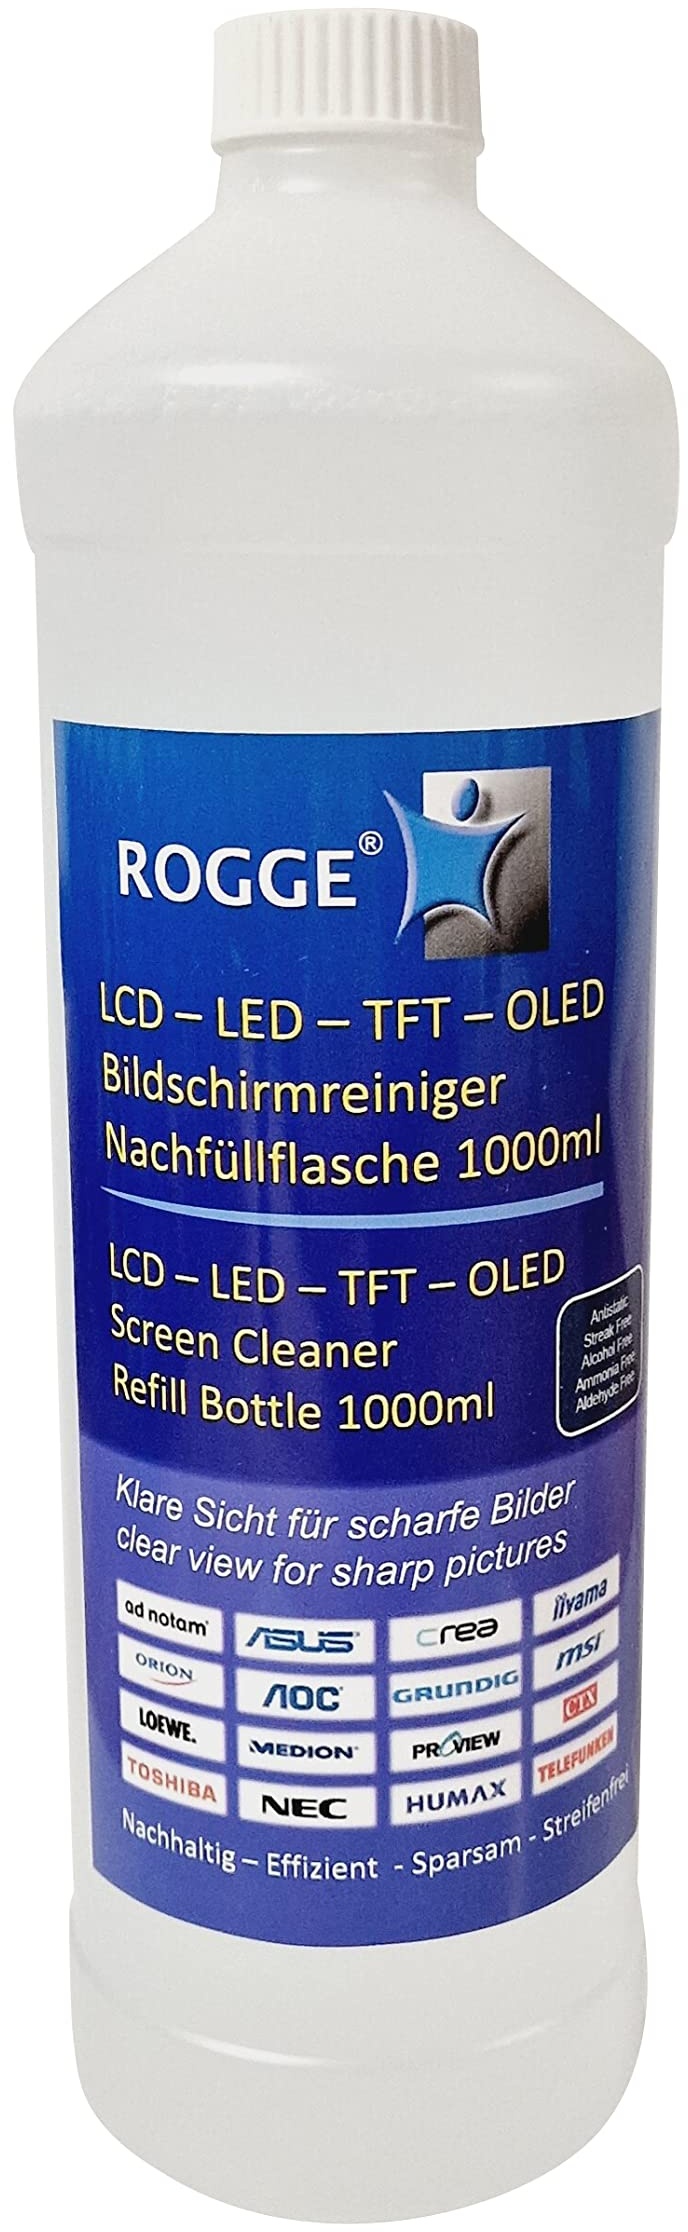 ROGGE Bildschirmreiniger Nachfüllflasche 1 Liter für ROGGE Duo-Clean Original. Der Profireiniger für: LCD/TFT/LED-Plasma Displays, sowie Tablet, Smartphone, Das Original Made in Germany